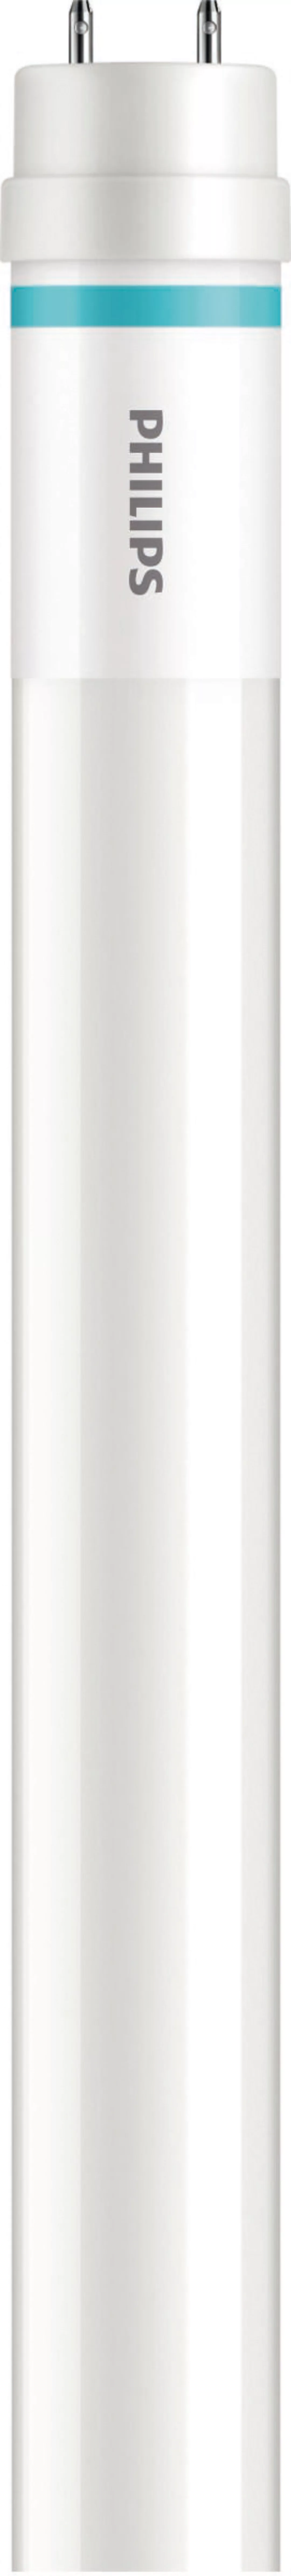 Philips Lighting LED-Tube T8 f. KVG/VVG G13, 865, 1500mm MASLEDtube #316904 günstig online kaufen